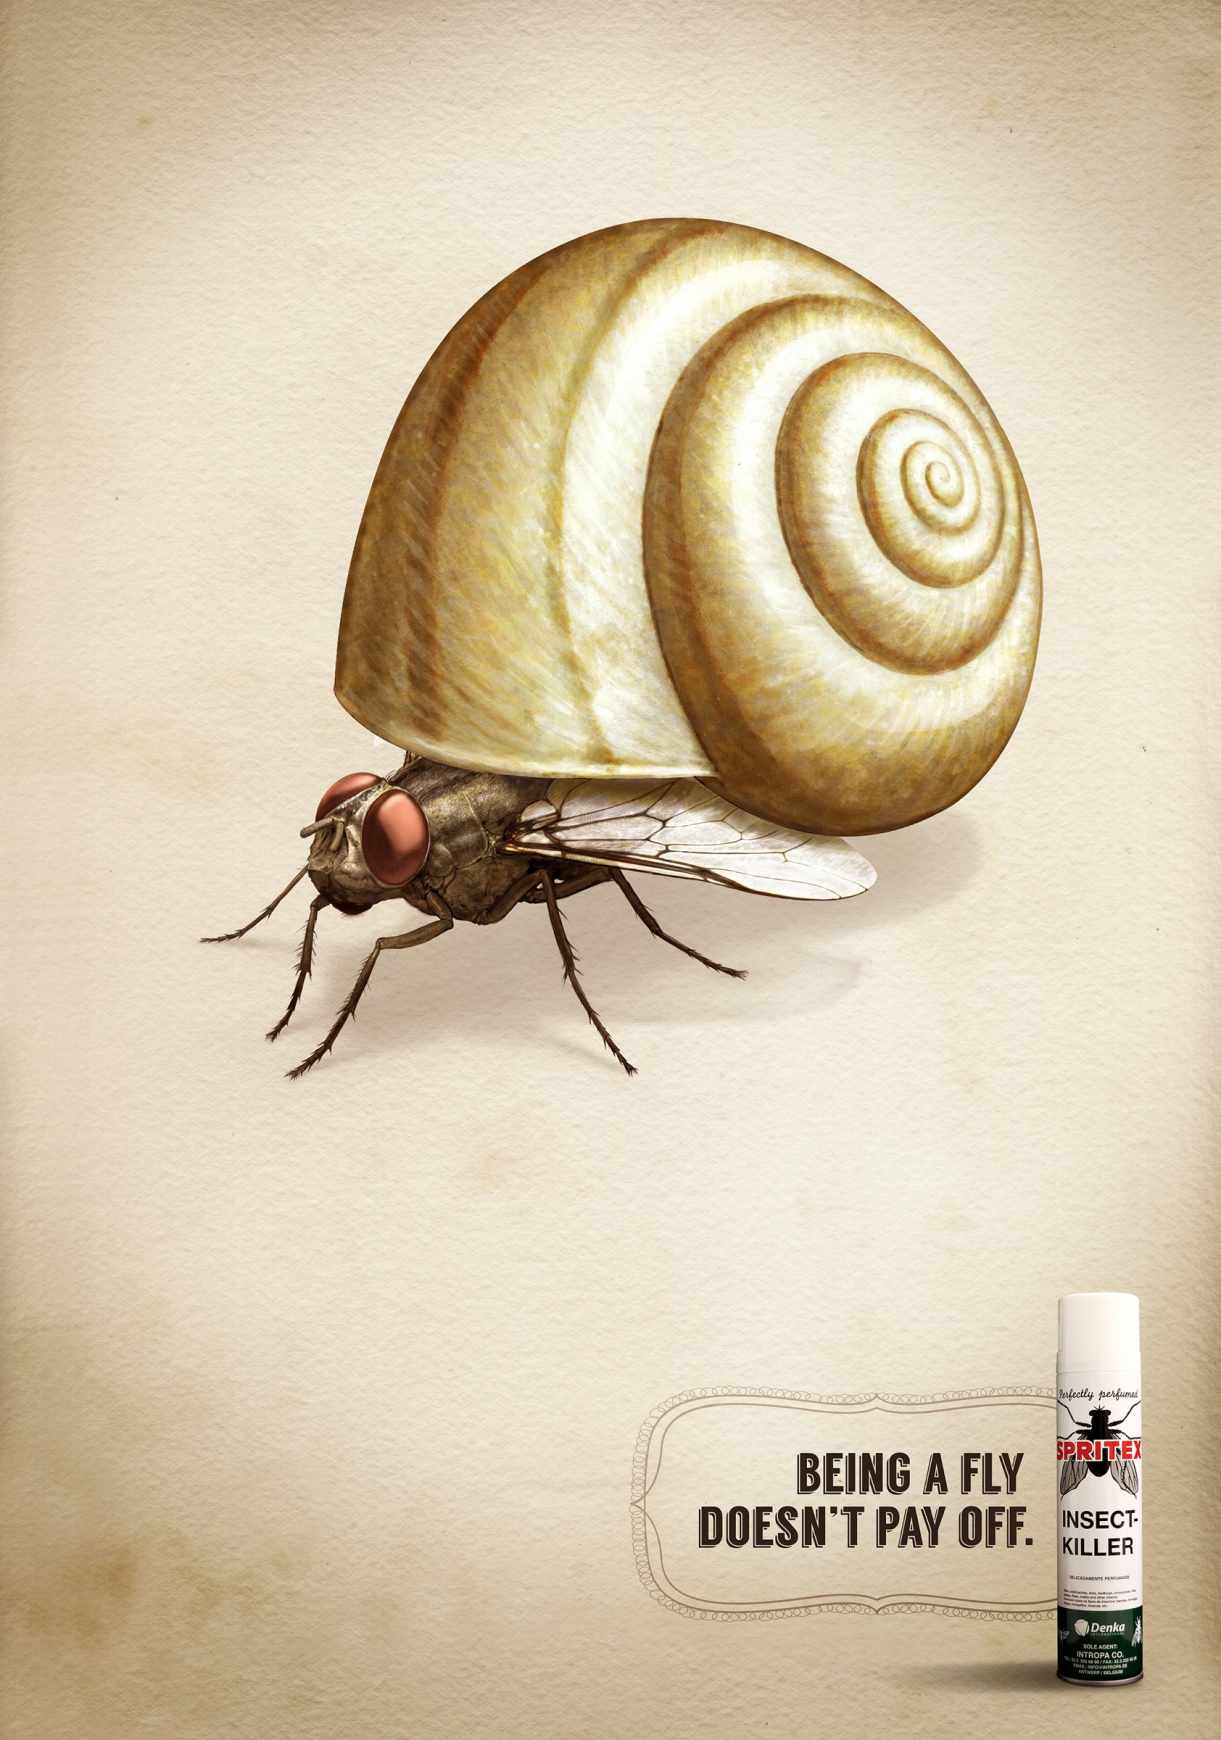 Spritex 杀虫剂平面广告创意设计-上海广告设计公司广告欣赏1-苍蝇篇